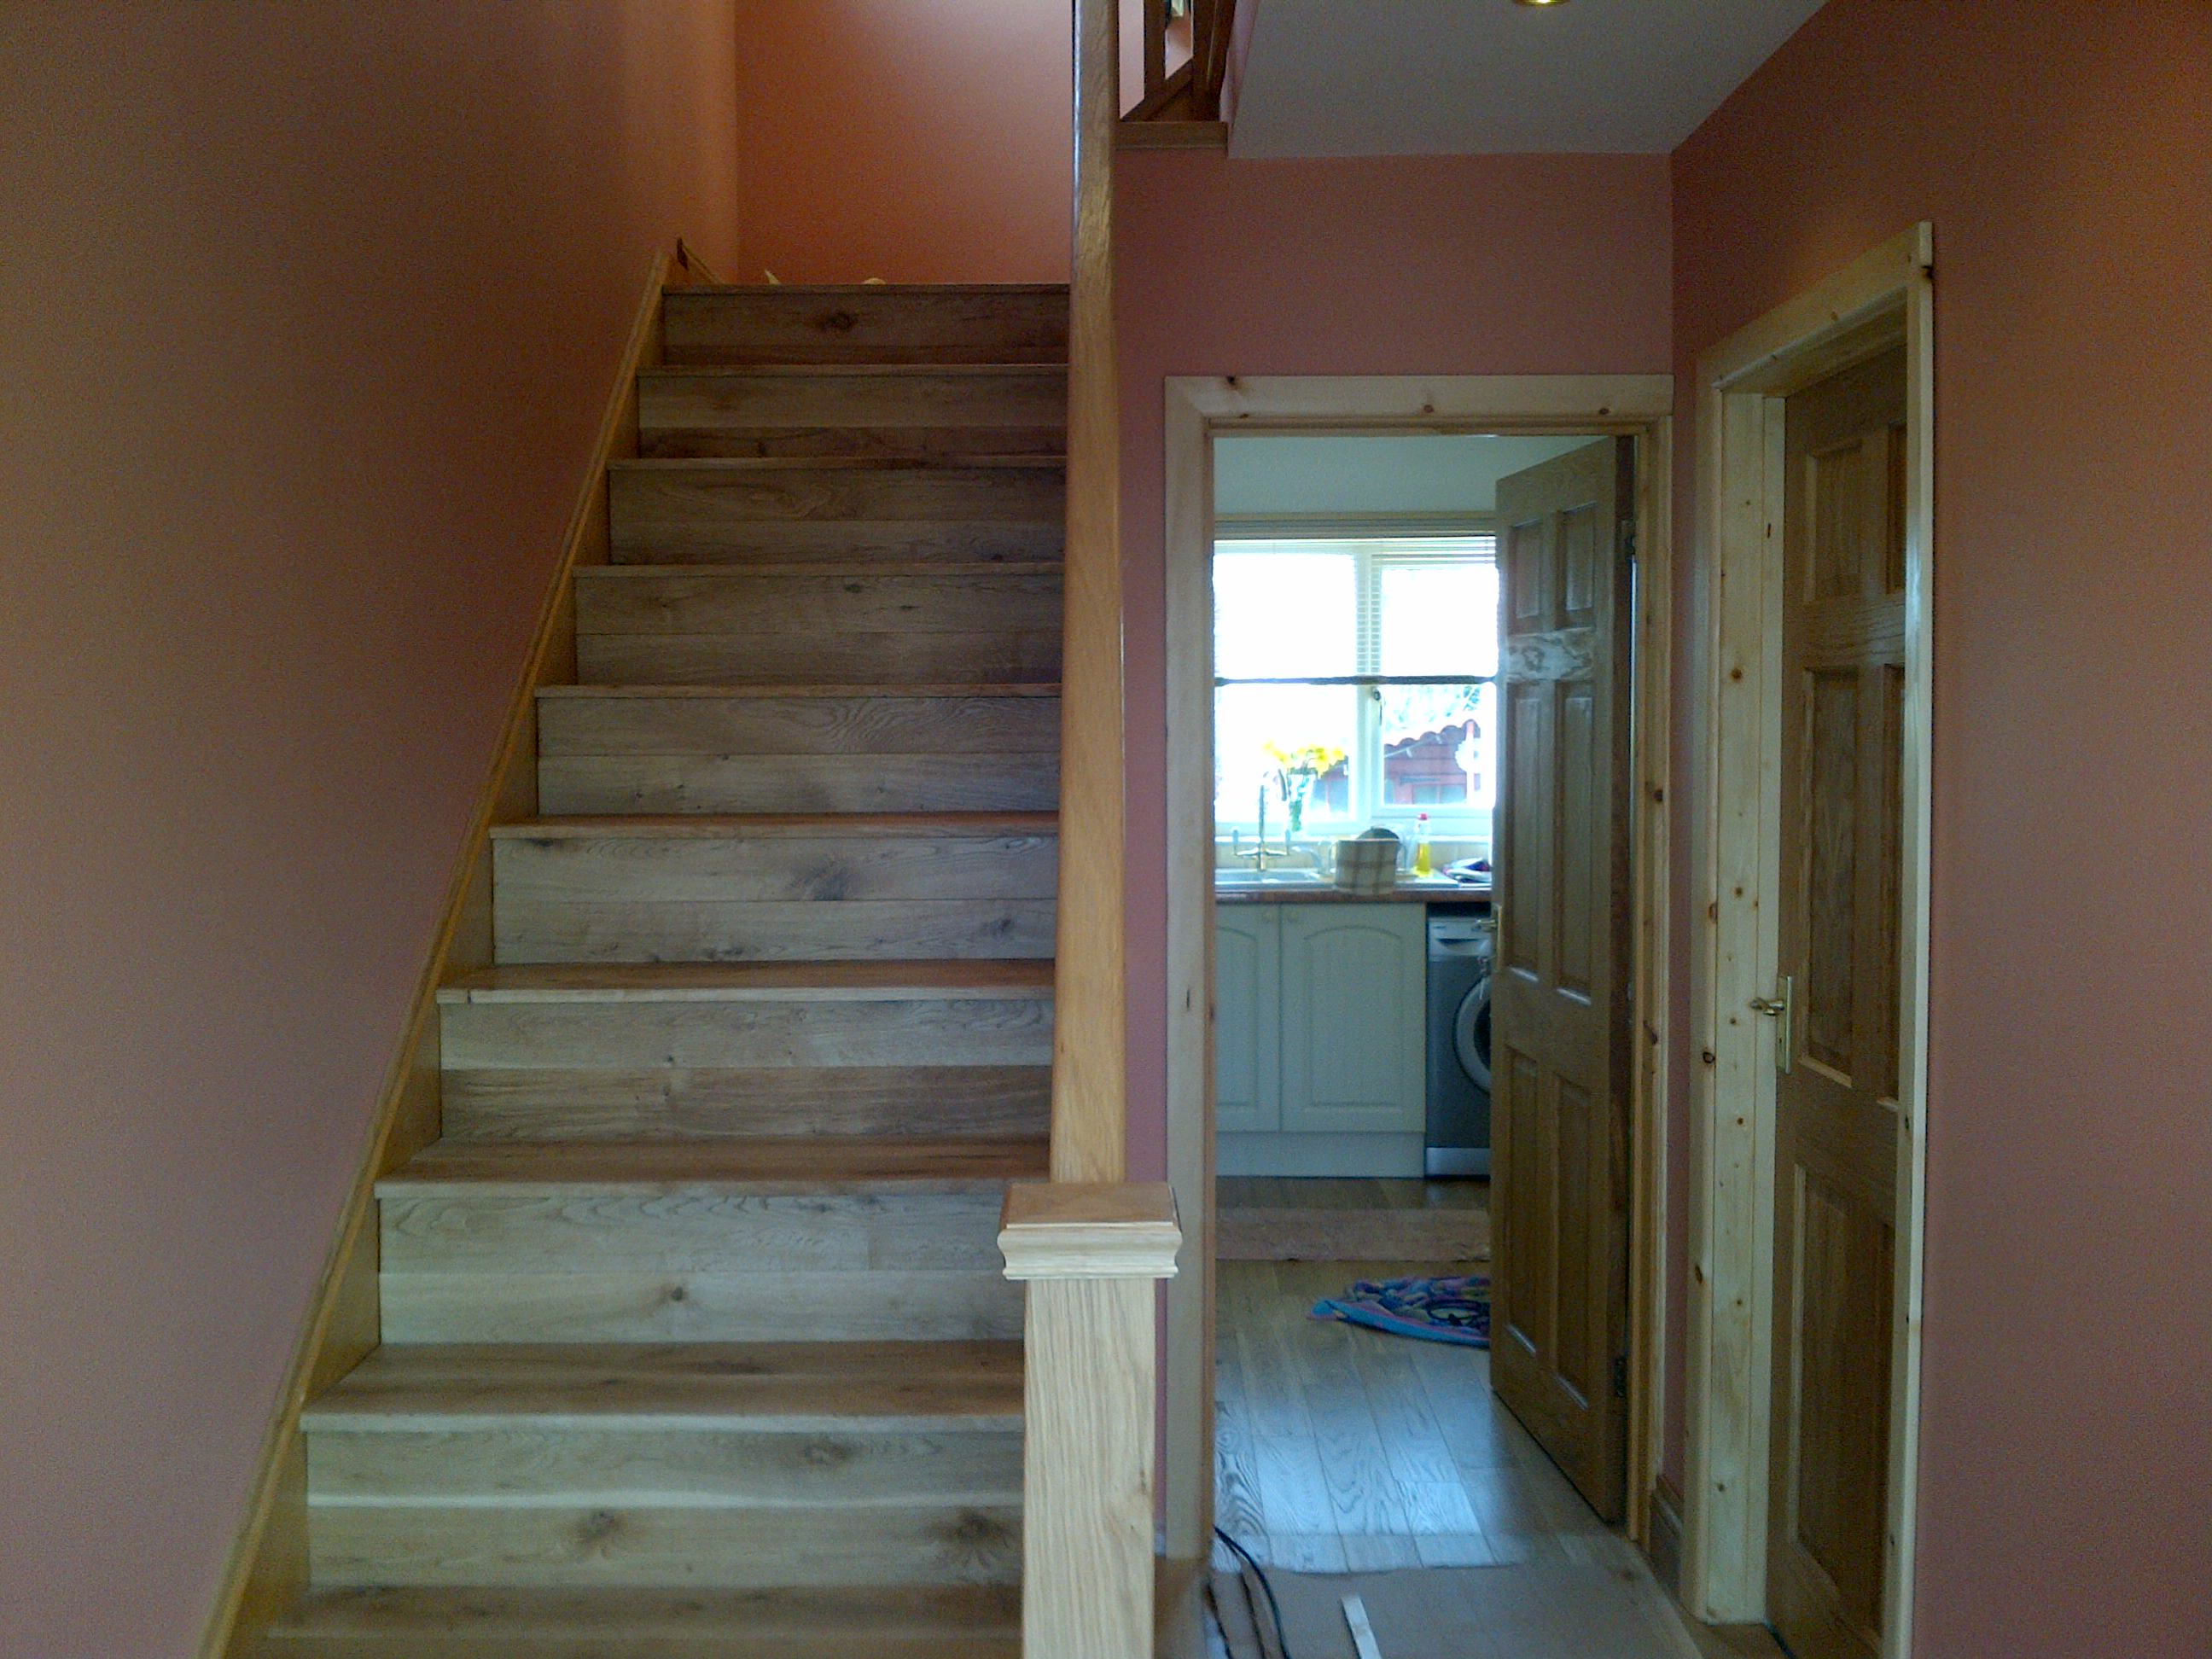 Stairway_2_plastering